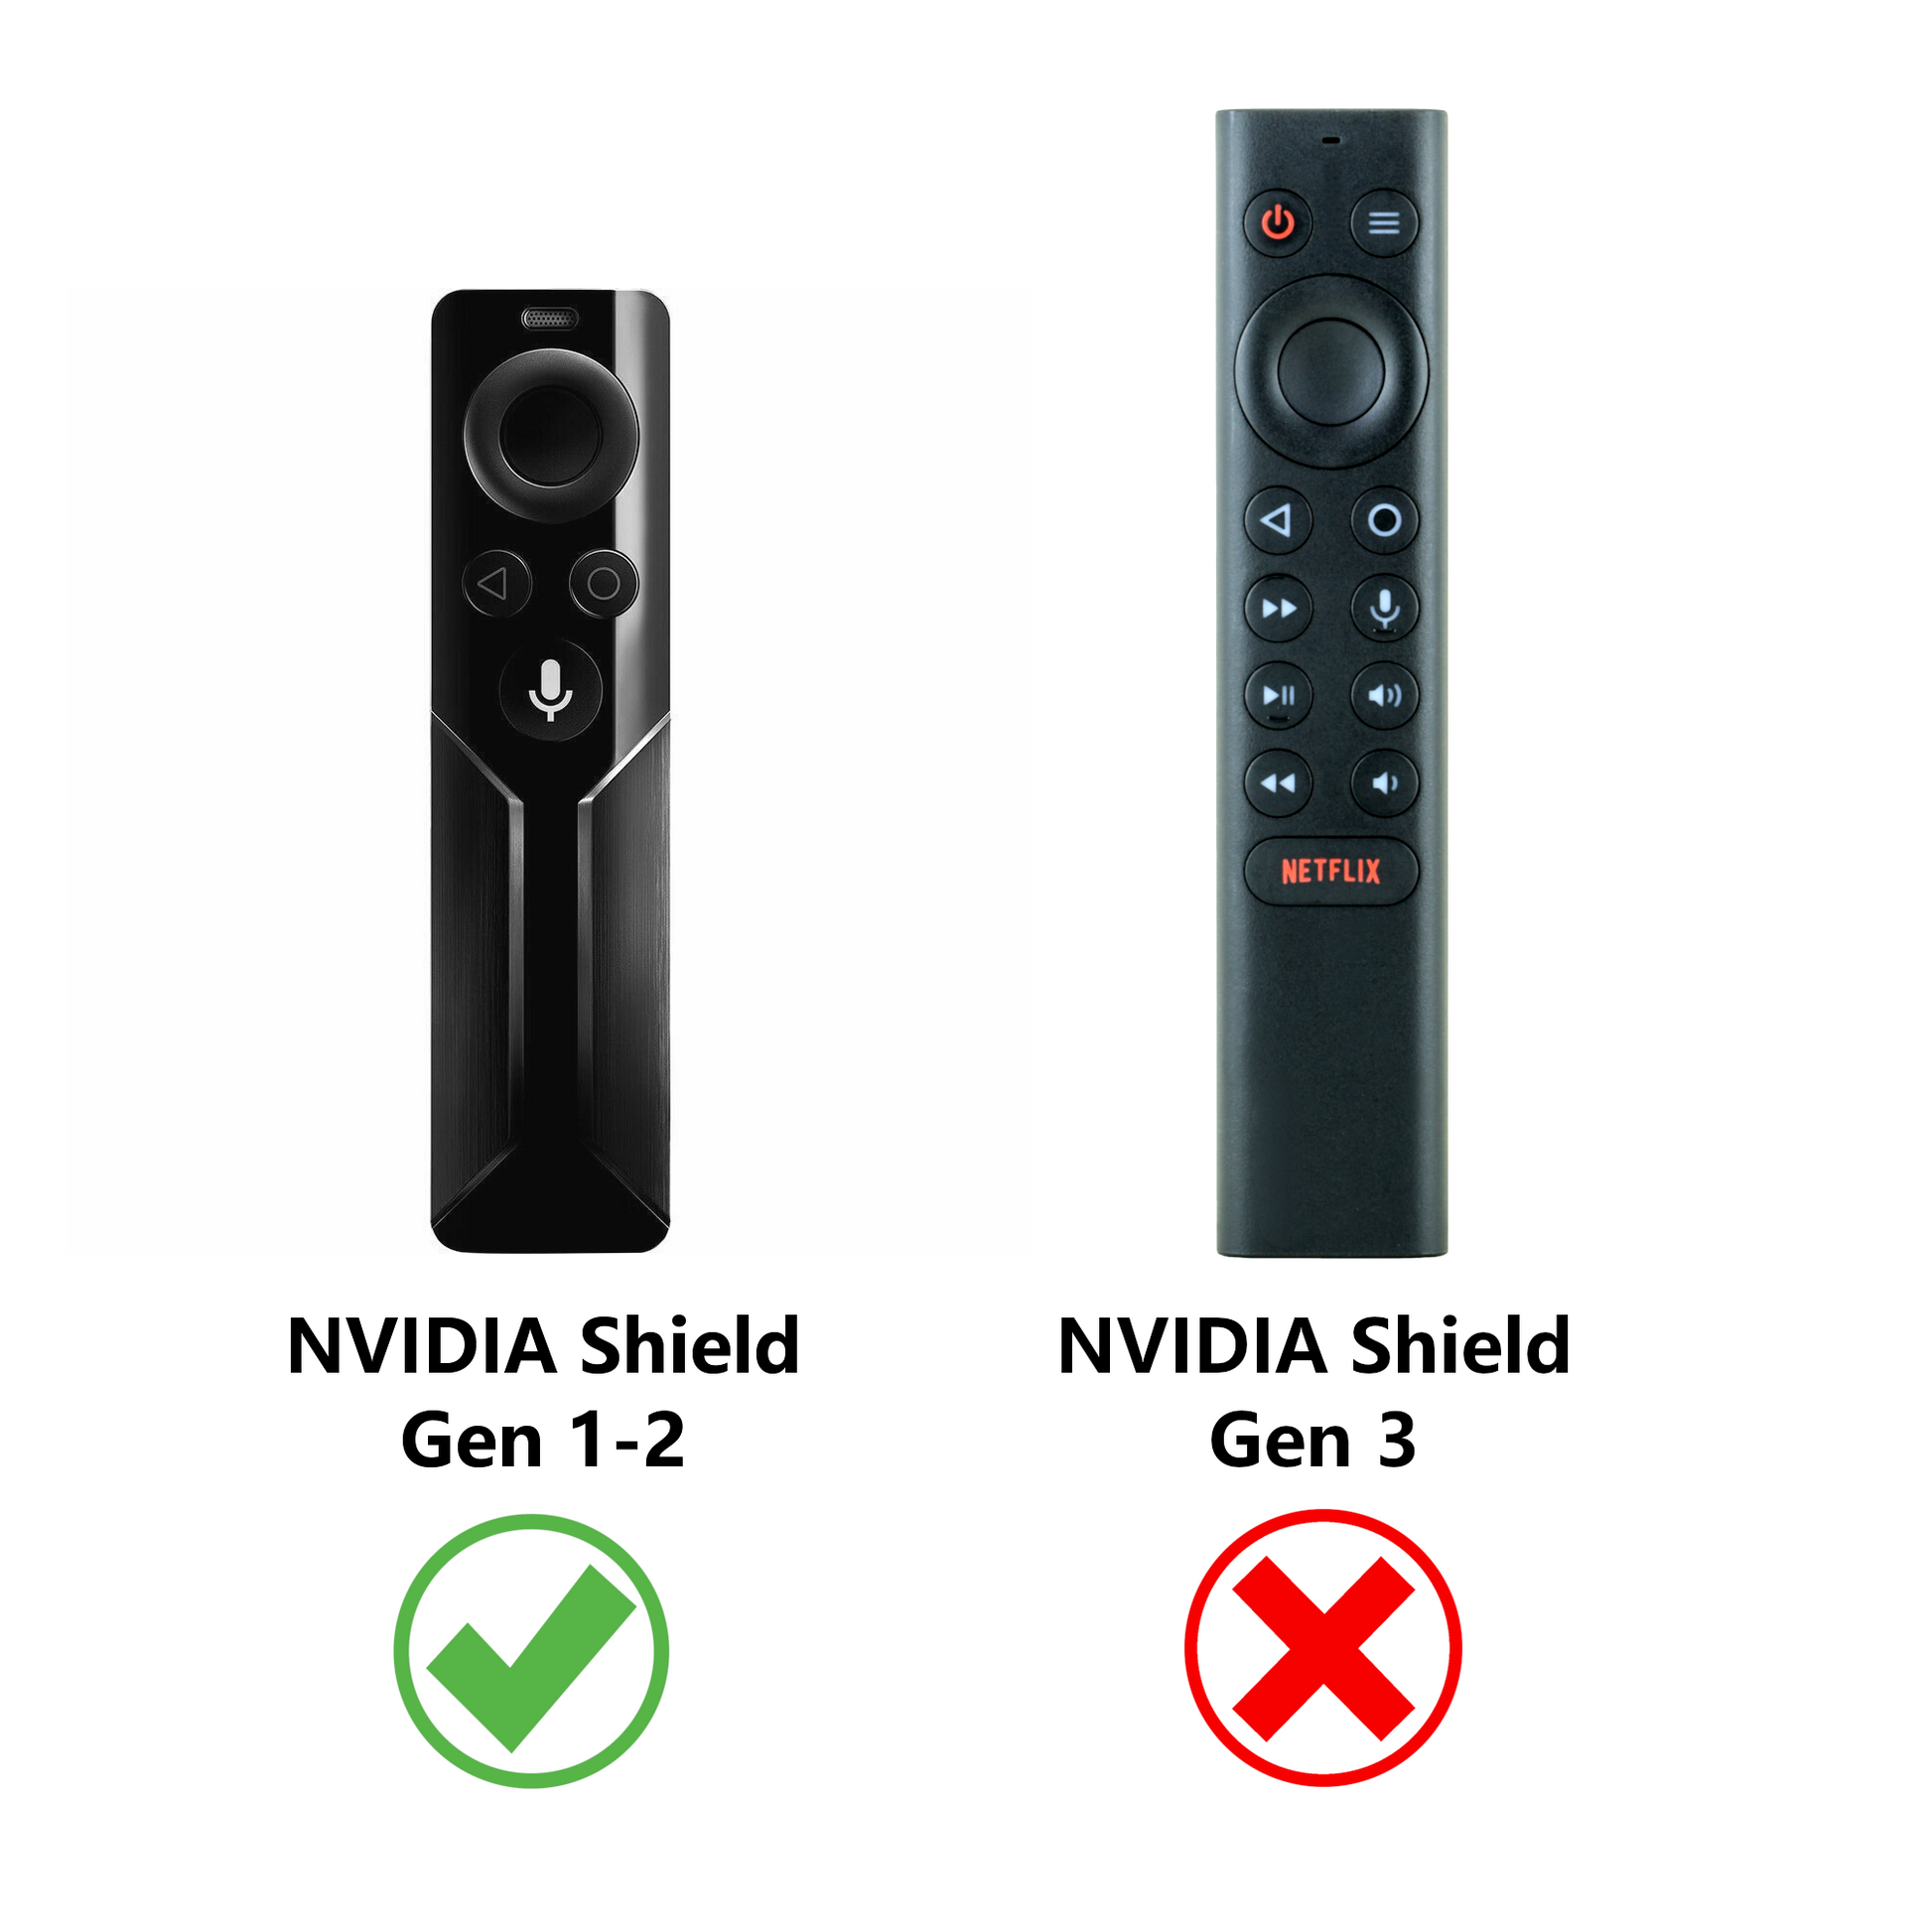 Sideclick Universal Remote Control Attachment for NVIDIA® SHIELD™ Stre